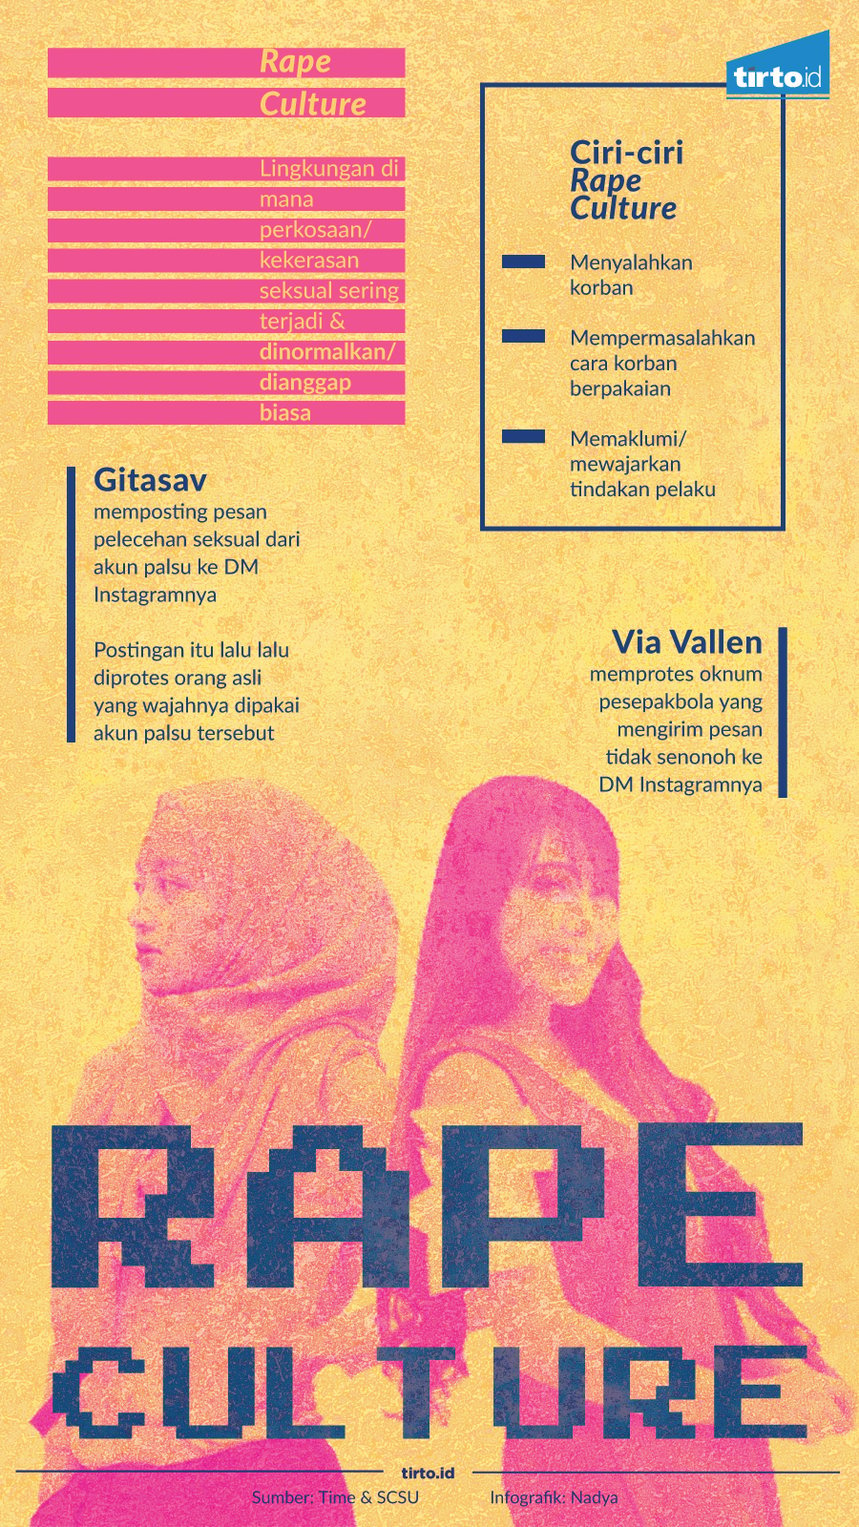 Infografik Rape Culture